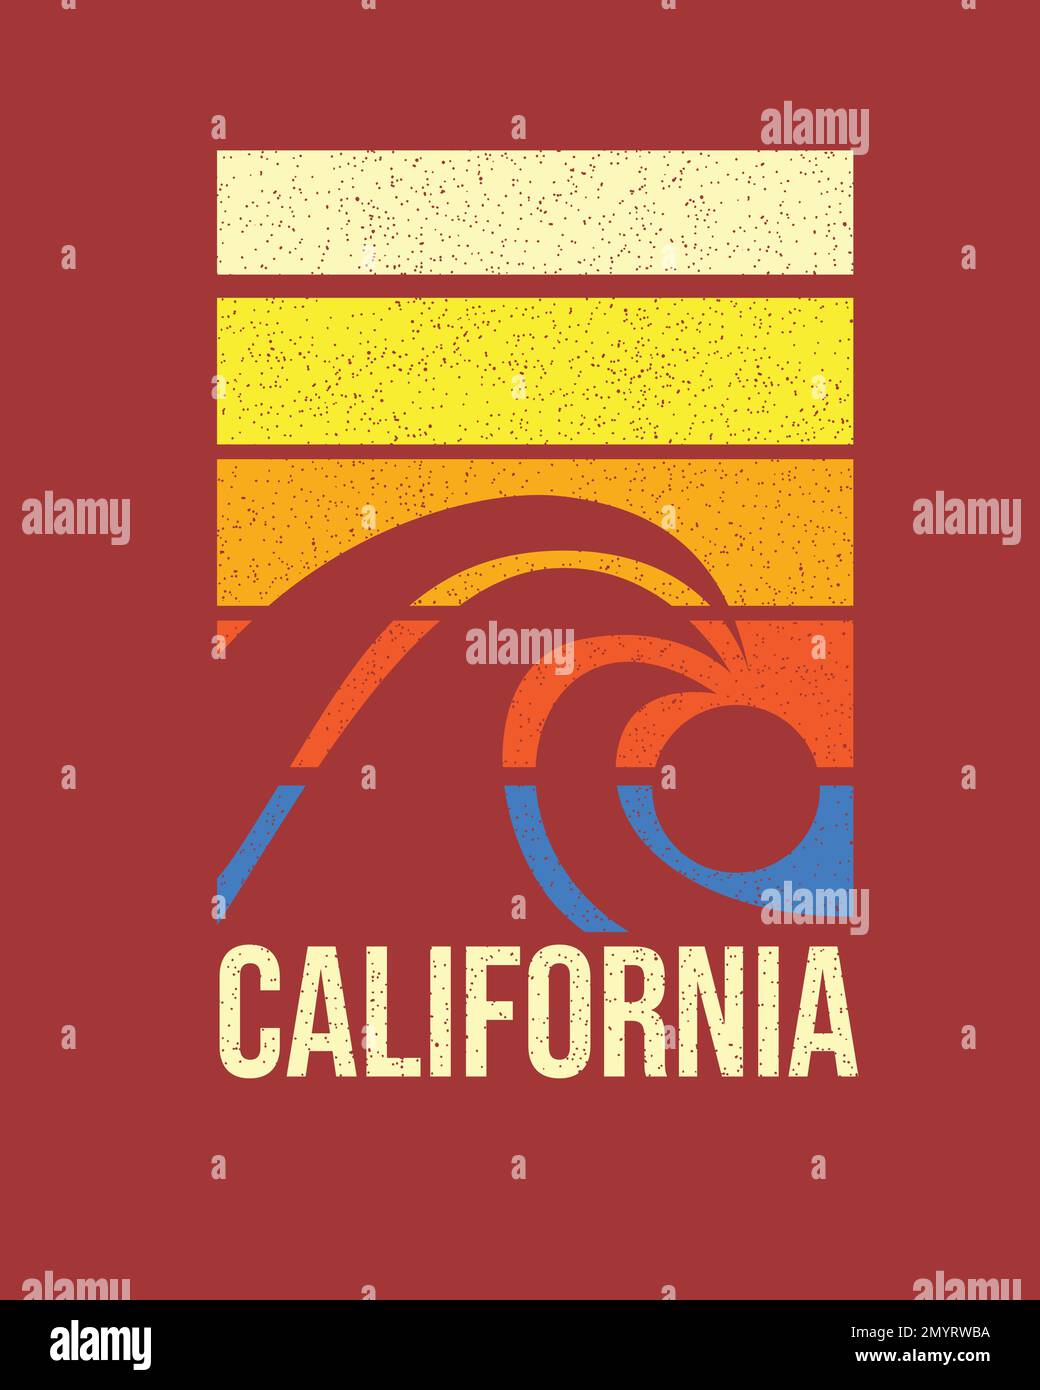 Kalifornischer Retro-Strand Wellen Sonnenuntergang farbenfrohes Poster-Grafikdesign mit T-Shirt-Druck Stock Vektor